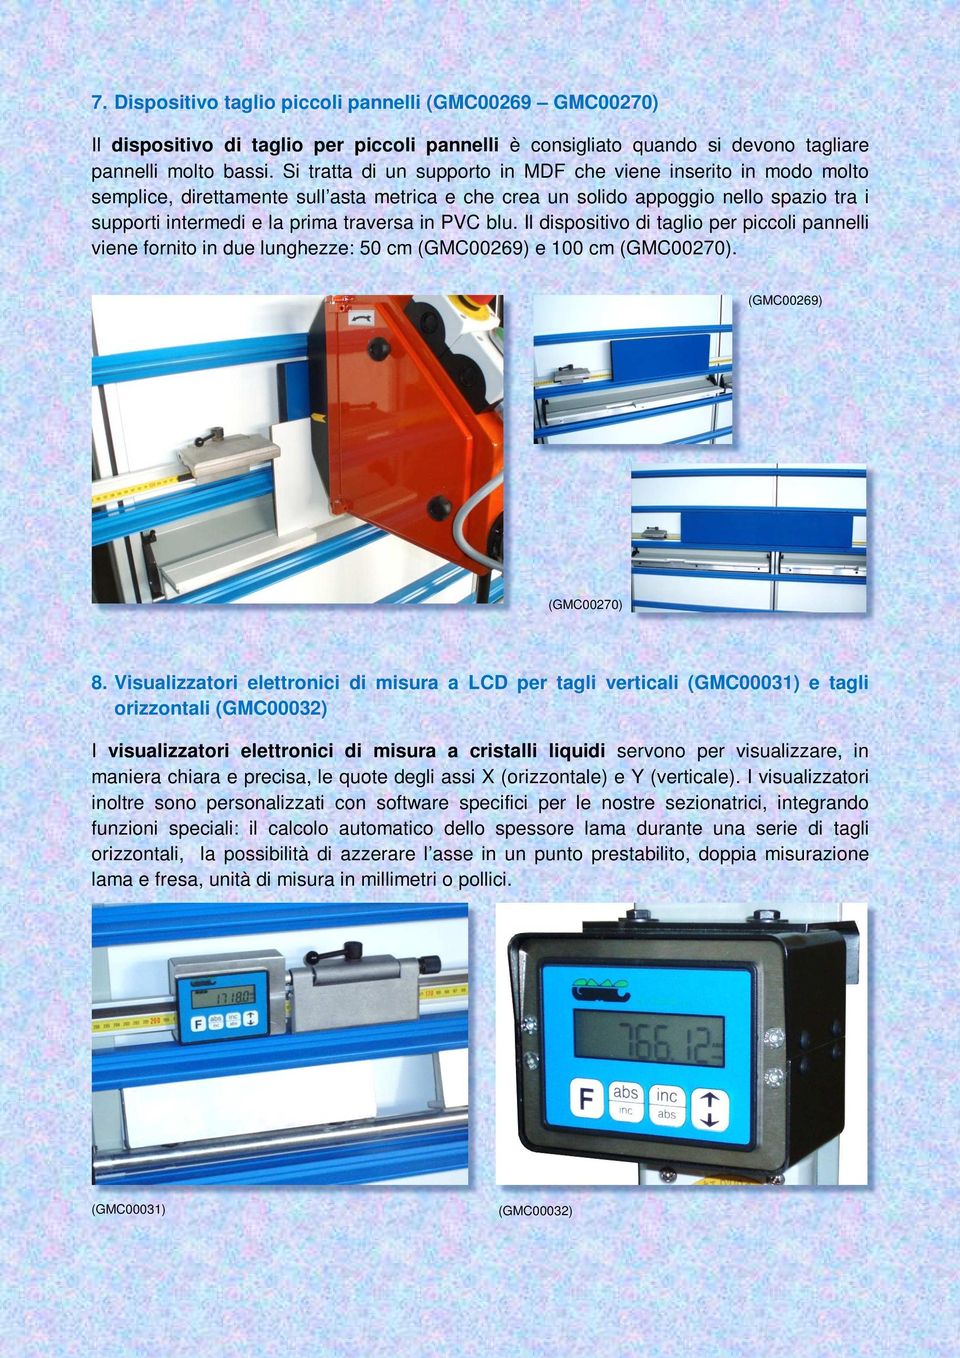 PVC blu. Il dispositivo di taglio per piccoli pannelli viene fornito in due lunghezze: 50 cm (GMC00269) e 100 cm (GMC00270). (GMC00269) (GMC00270) 8.